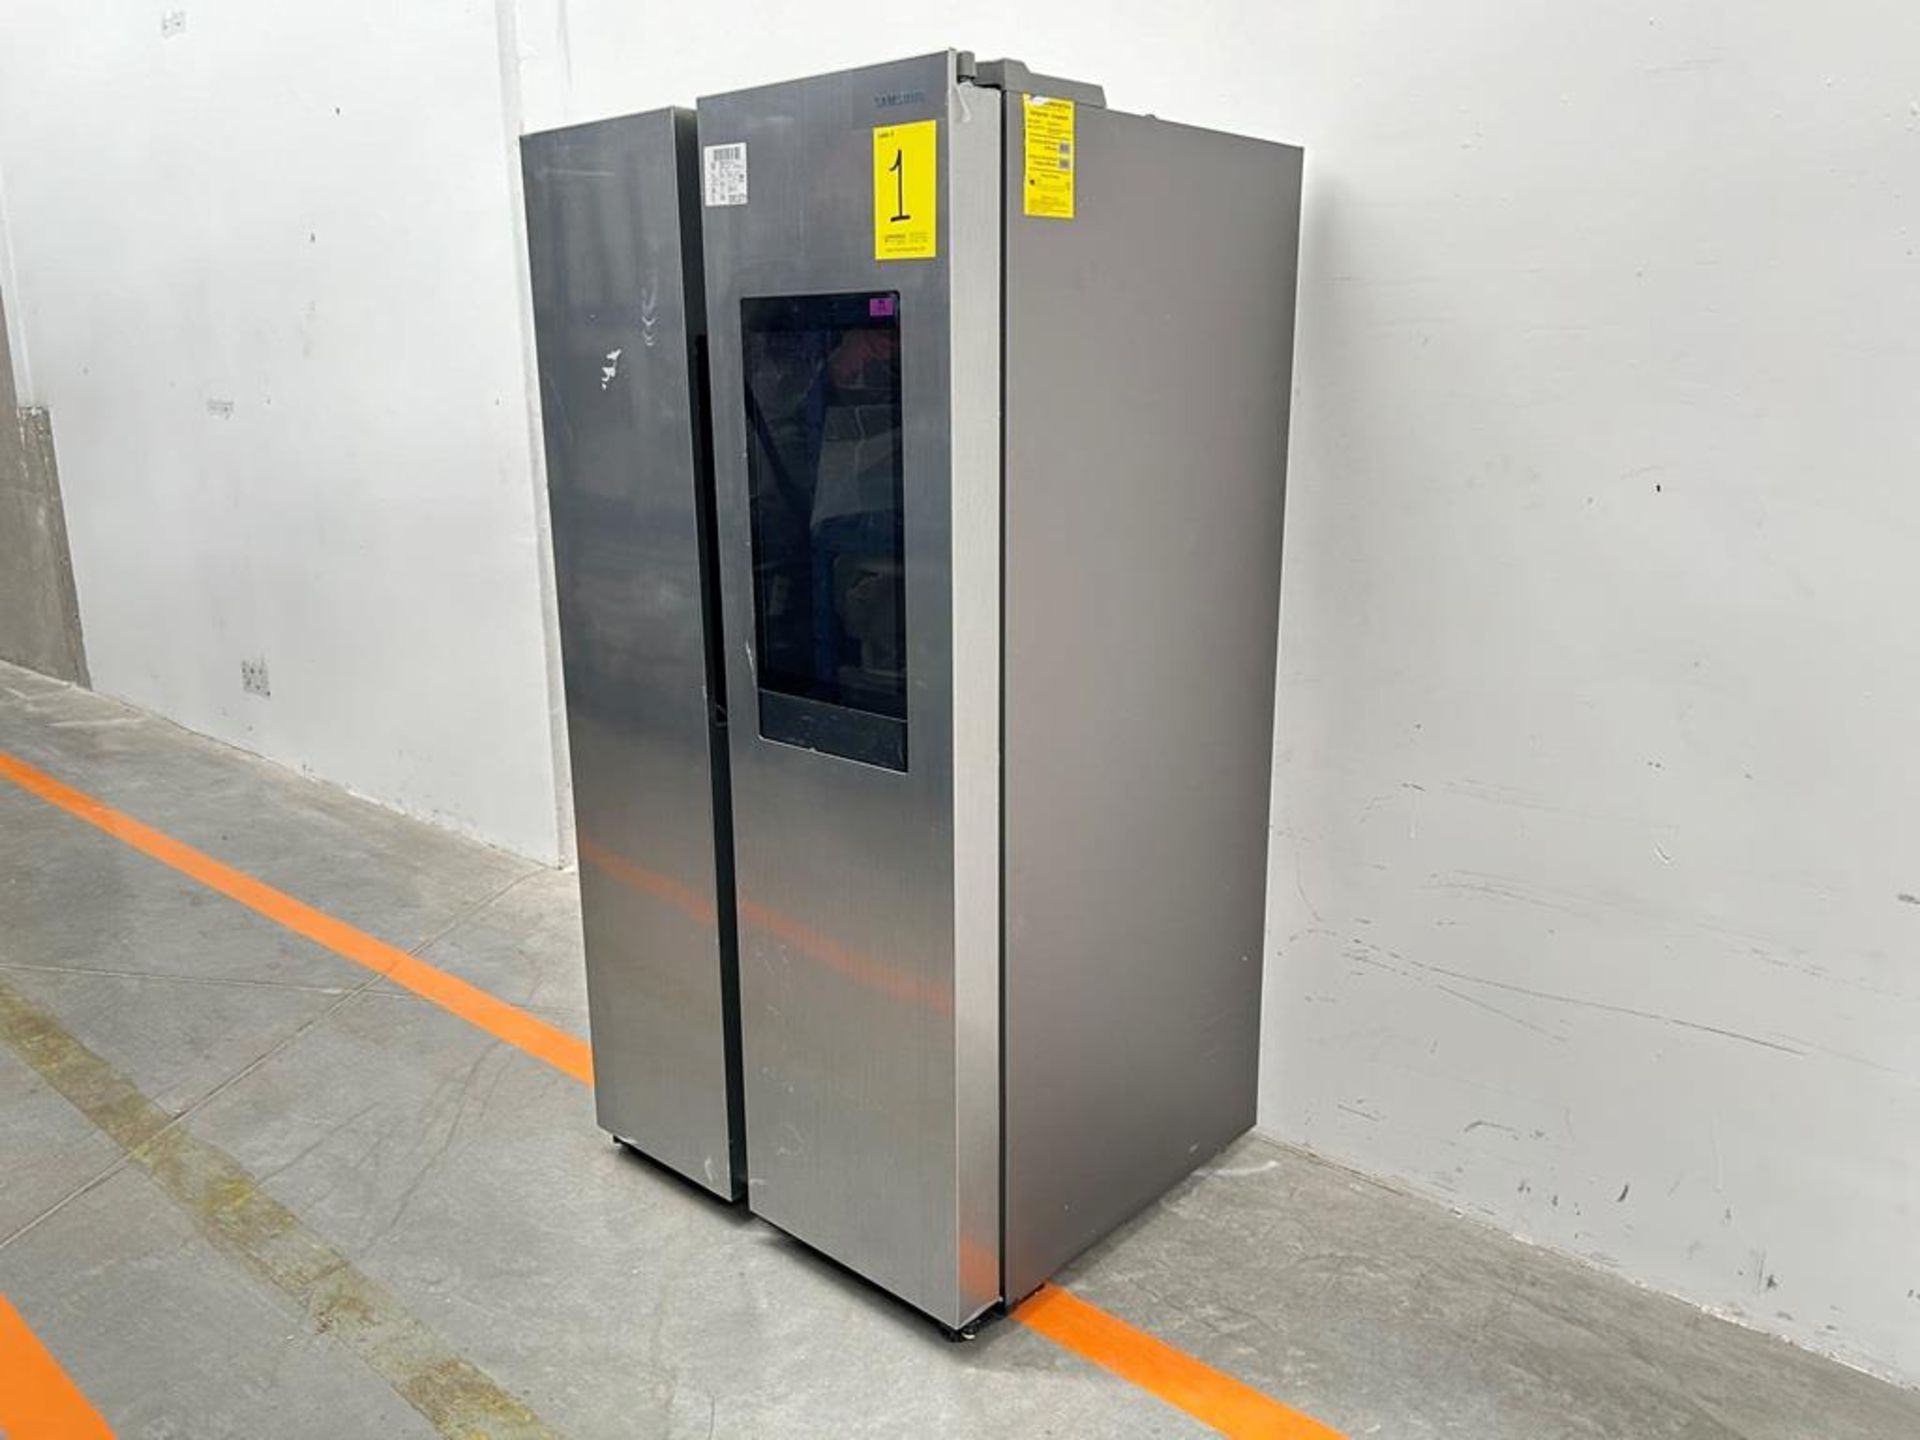 (NUEVO) Refrigerador Marca SAMSUNG, Modelo RS28A5F61S9, Serie 000015V, Color GRIS - Image 4 of 10